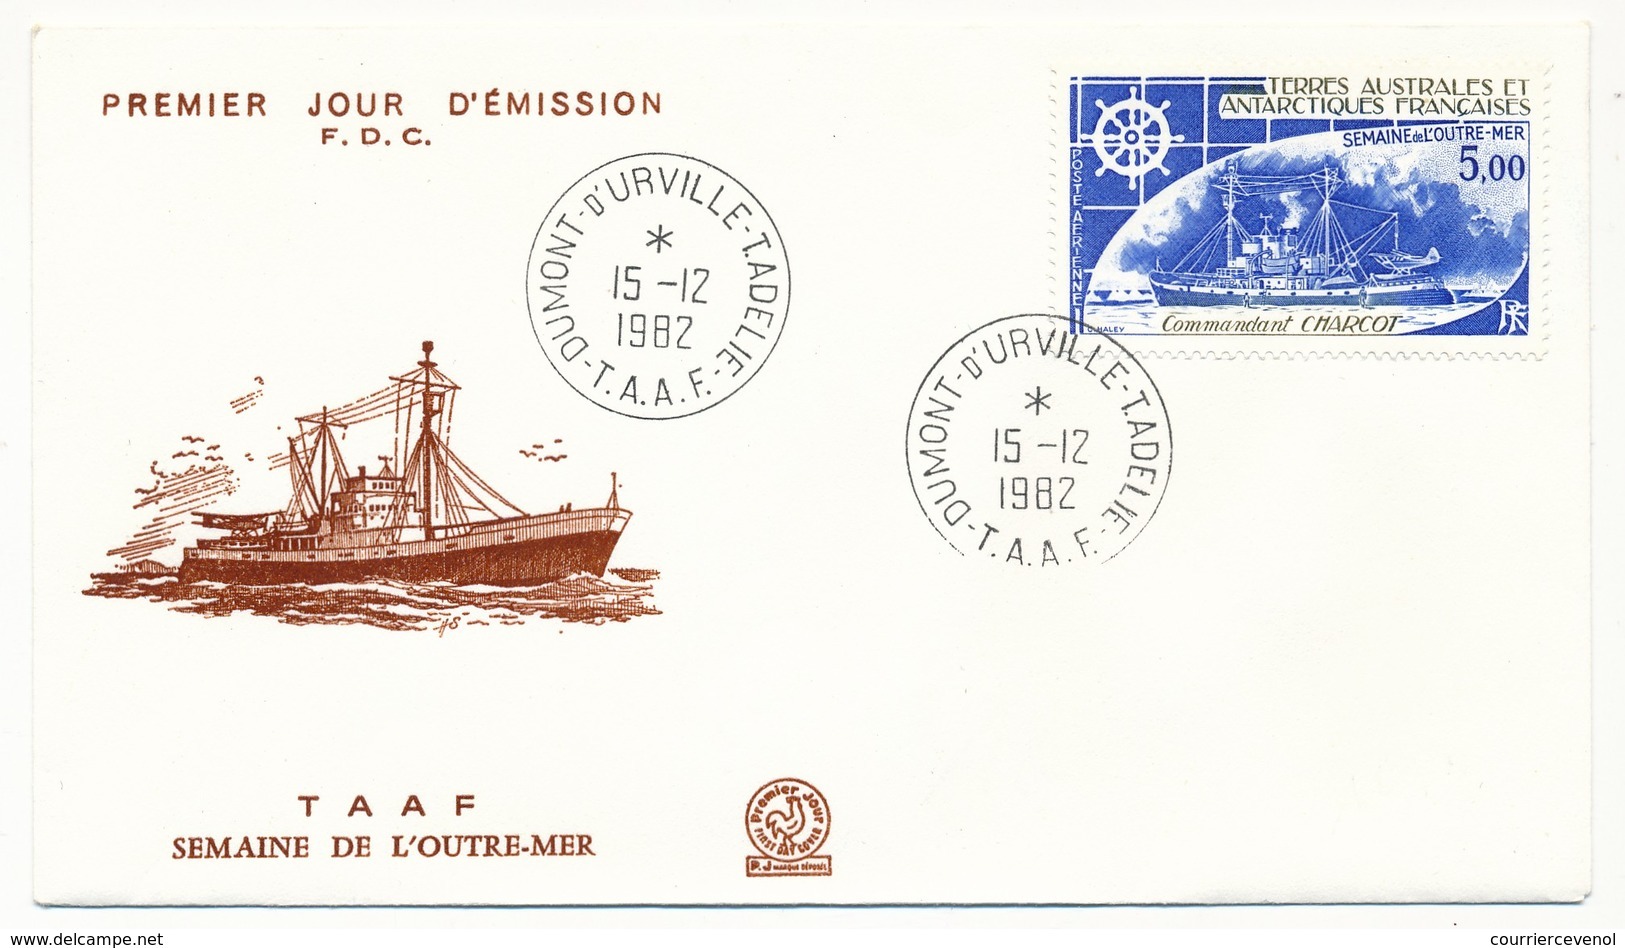 TAAF - Enveloppe FDC - 5,00 Semaine De L'Outre-mer - Dumont Durville Terre Adélie - 15-12-1982 - FDC